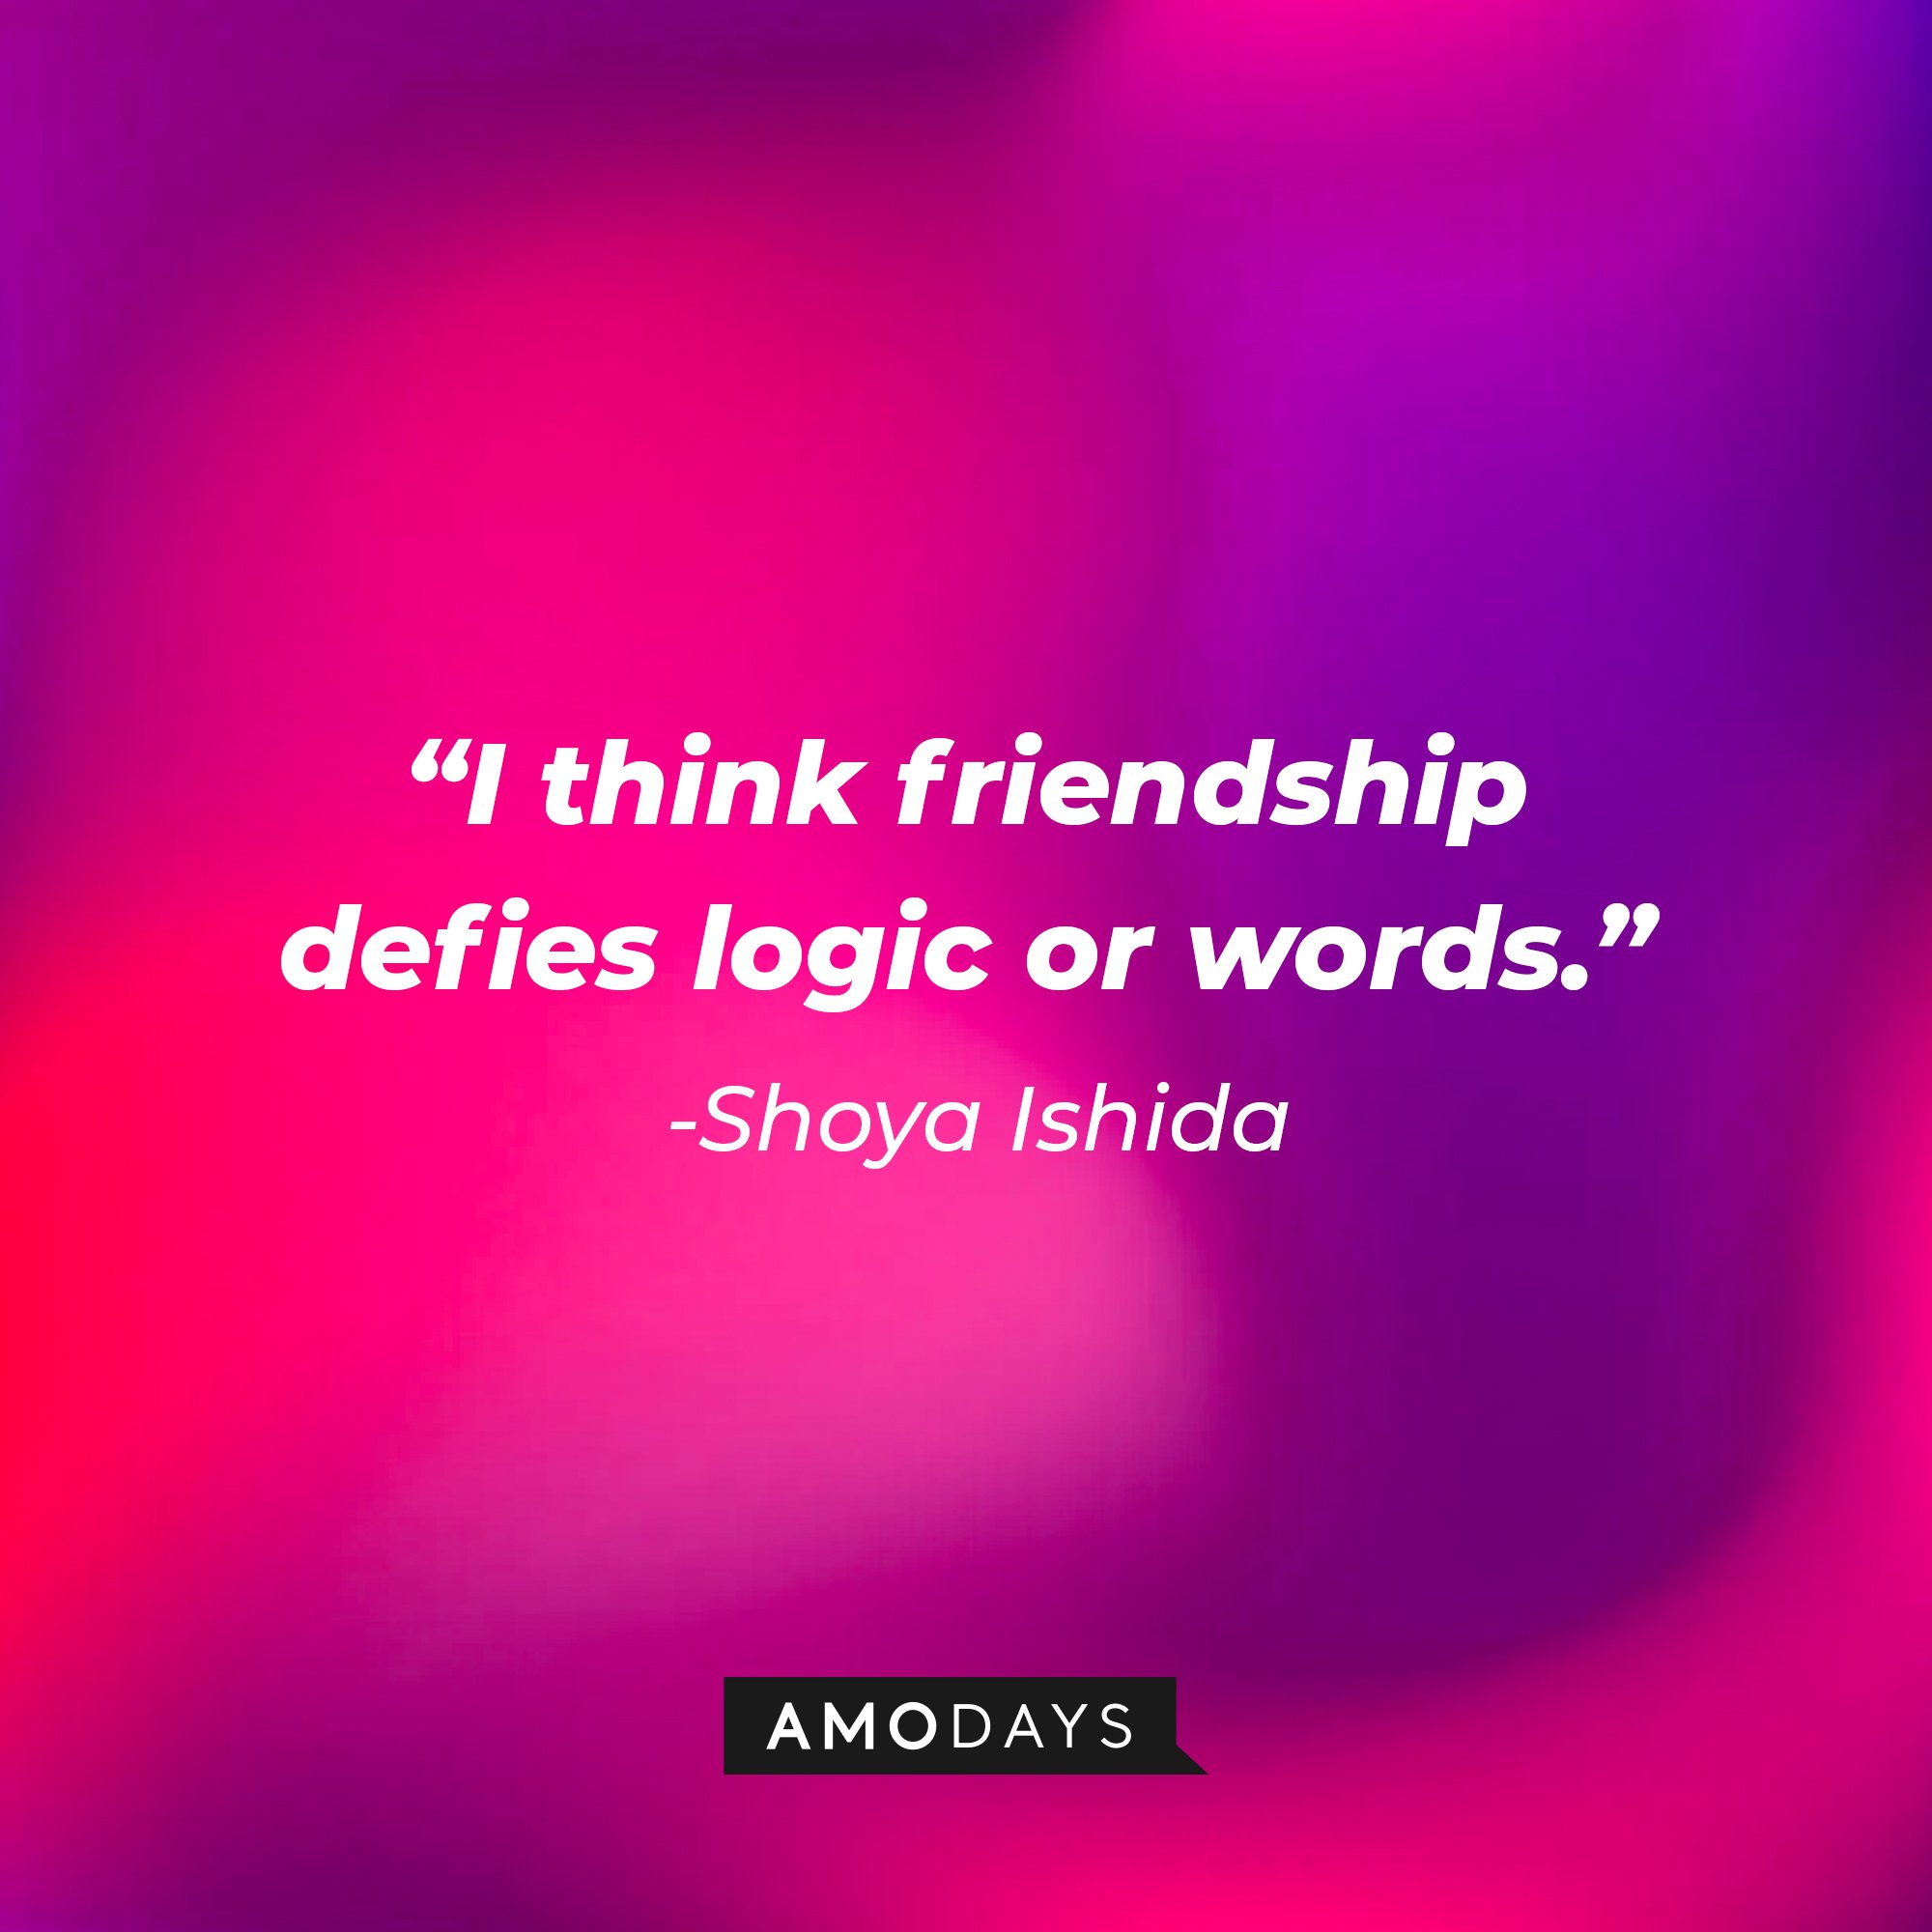 Shouya Ishida’s quote: "I think friendship defies logic or words." | Image: AmoDays